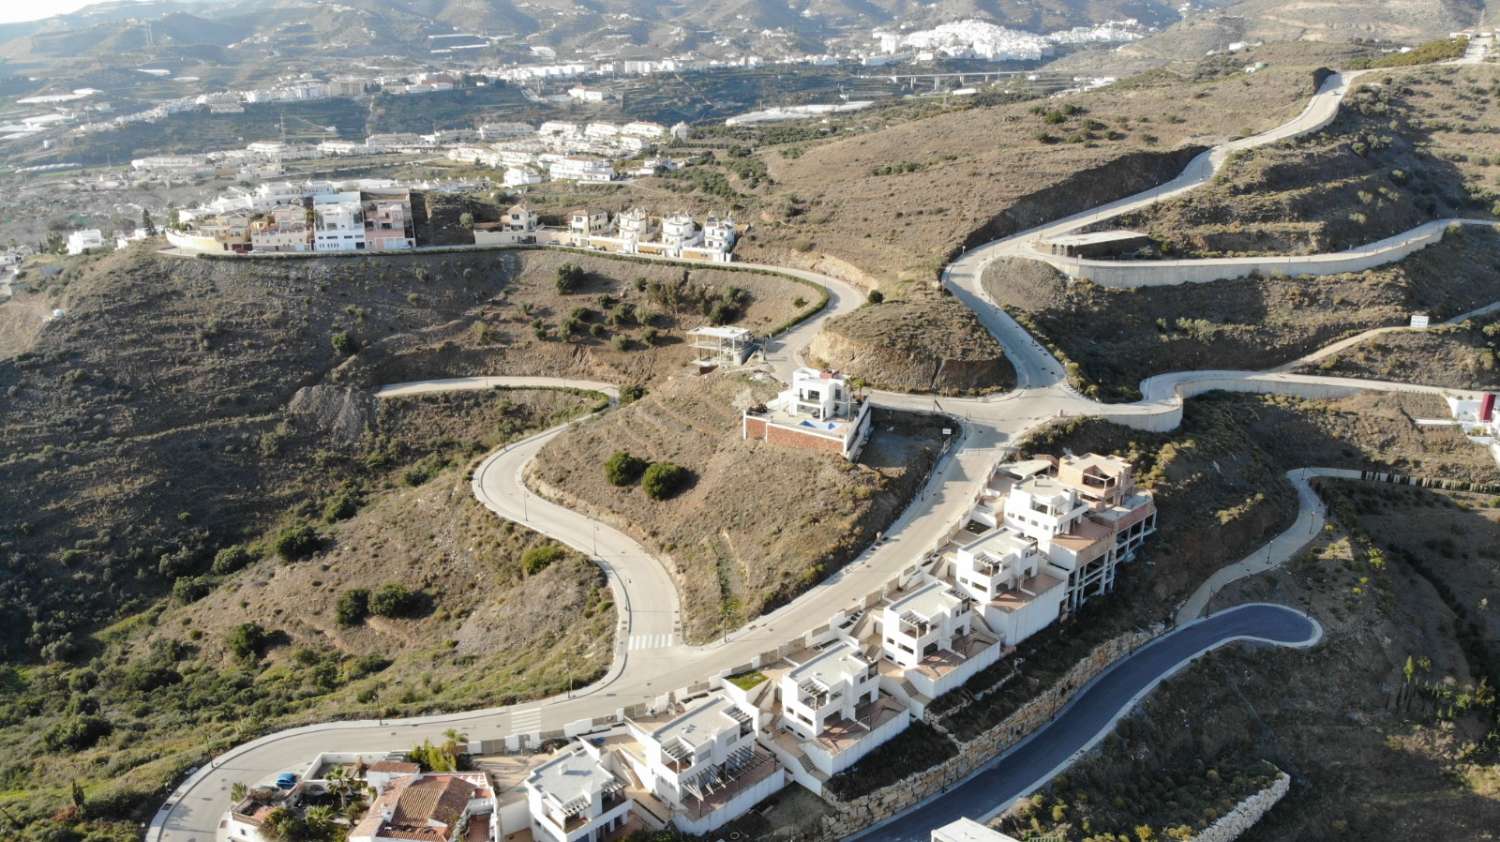 TERRAIN avec projet de logement à Peñoncillo-Torrox -Malaga.